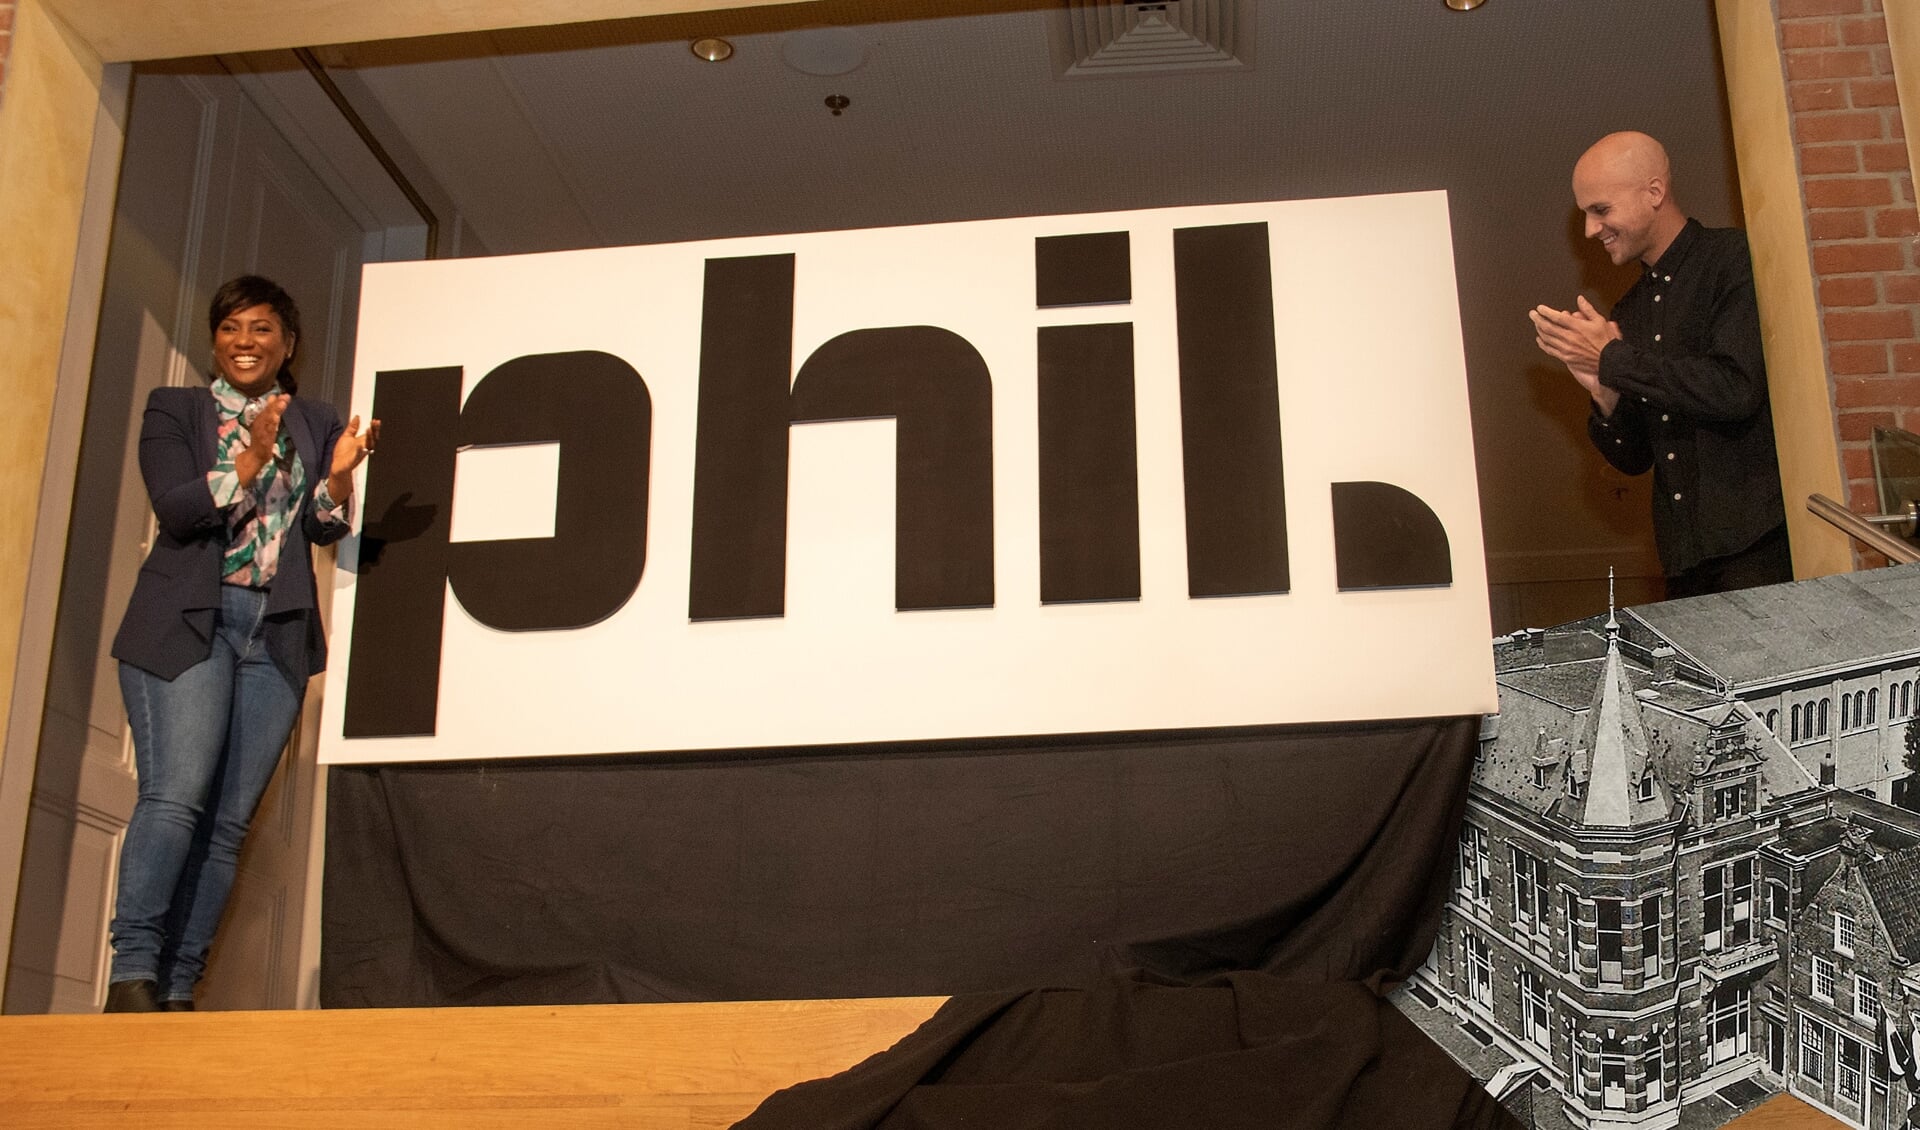 Edsila Robley en Milow lanceerden de nieuwe vlotte naam Phil.